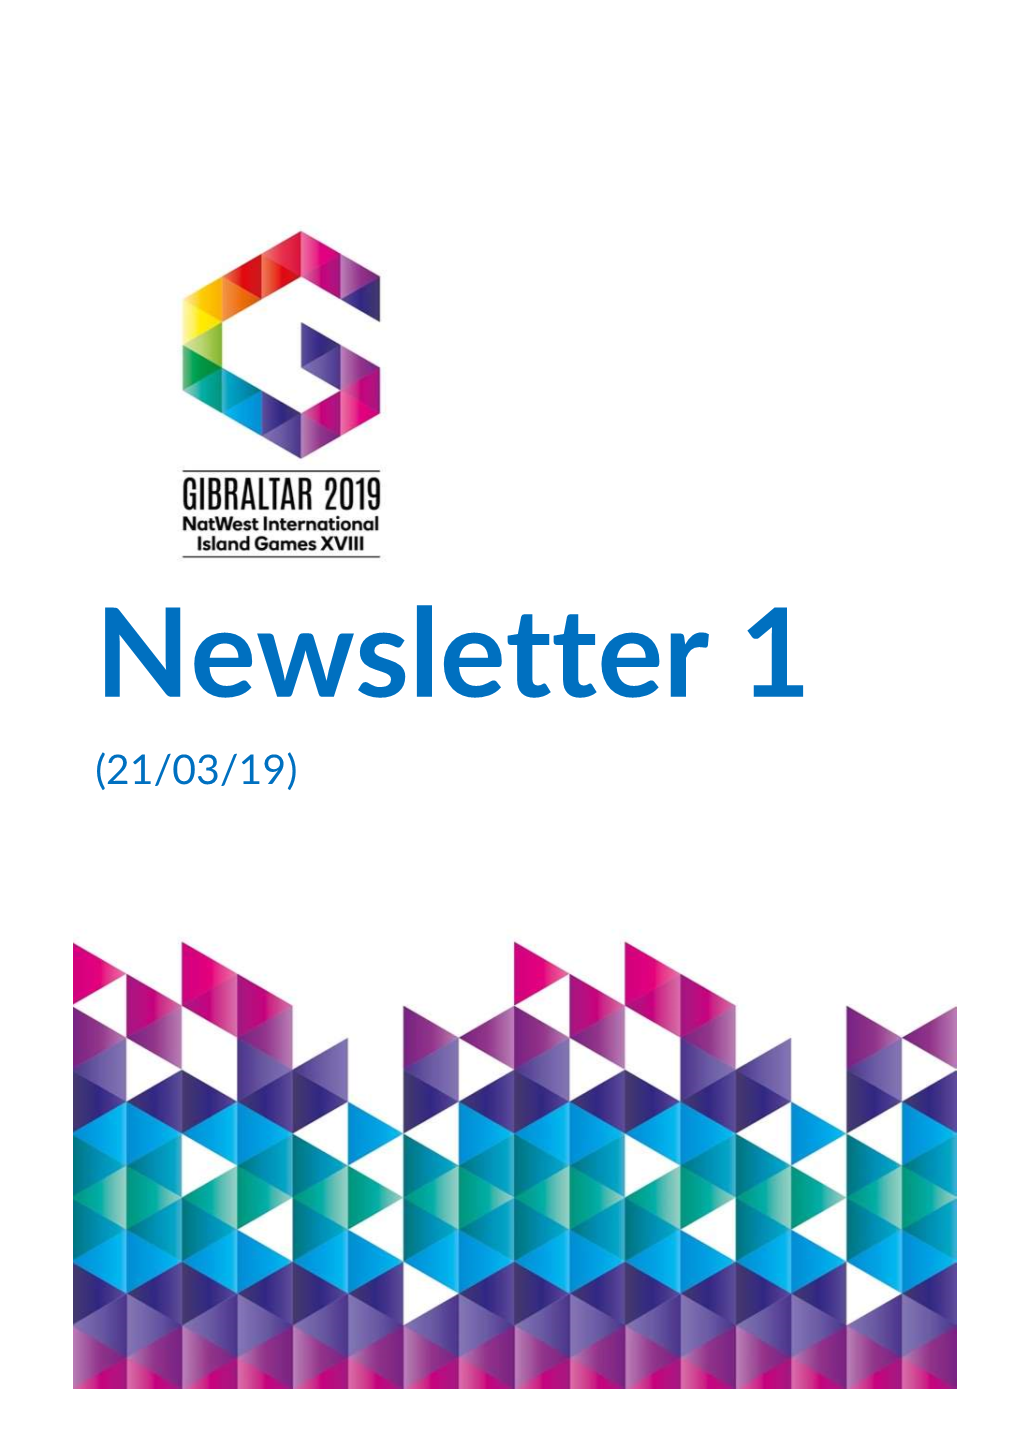 Gibraltar 2019 Newsletter 1 20 03 19